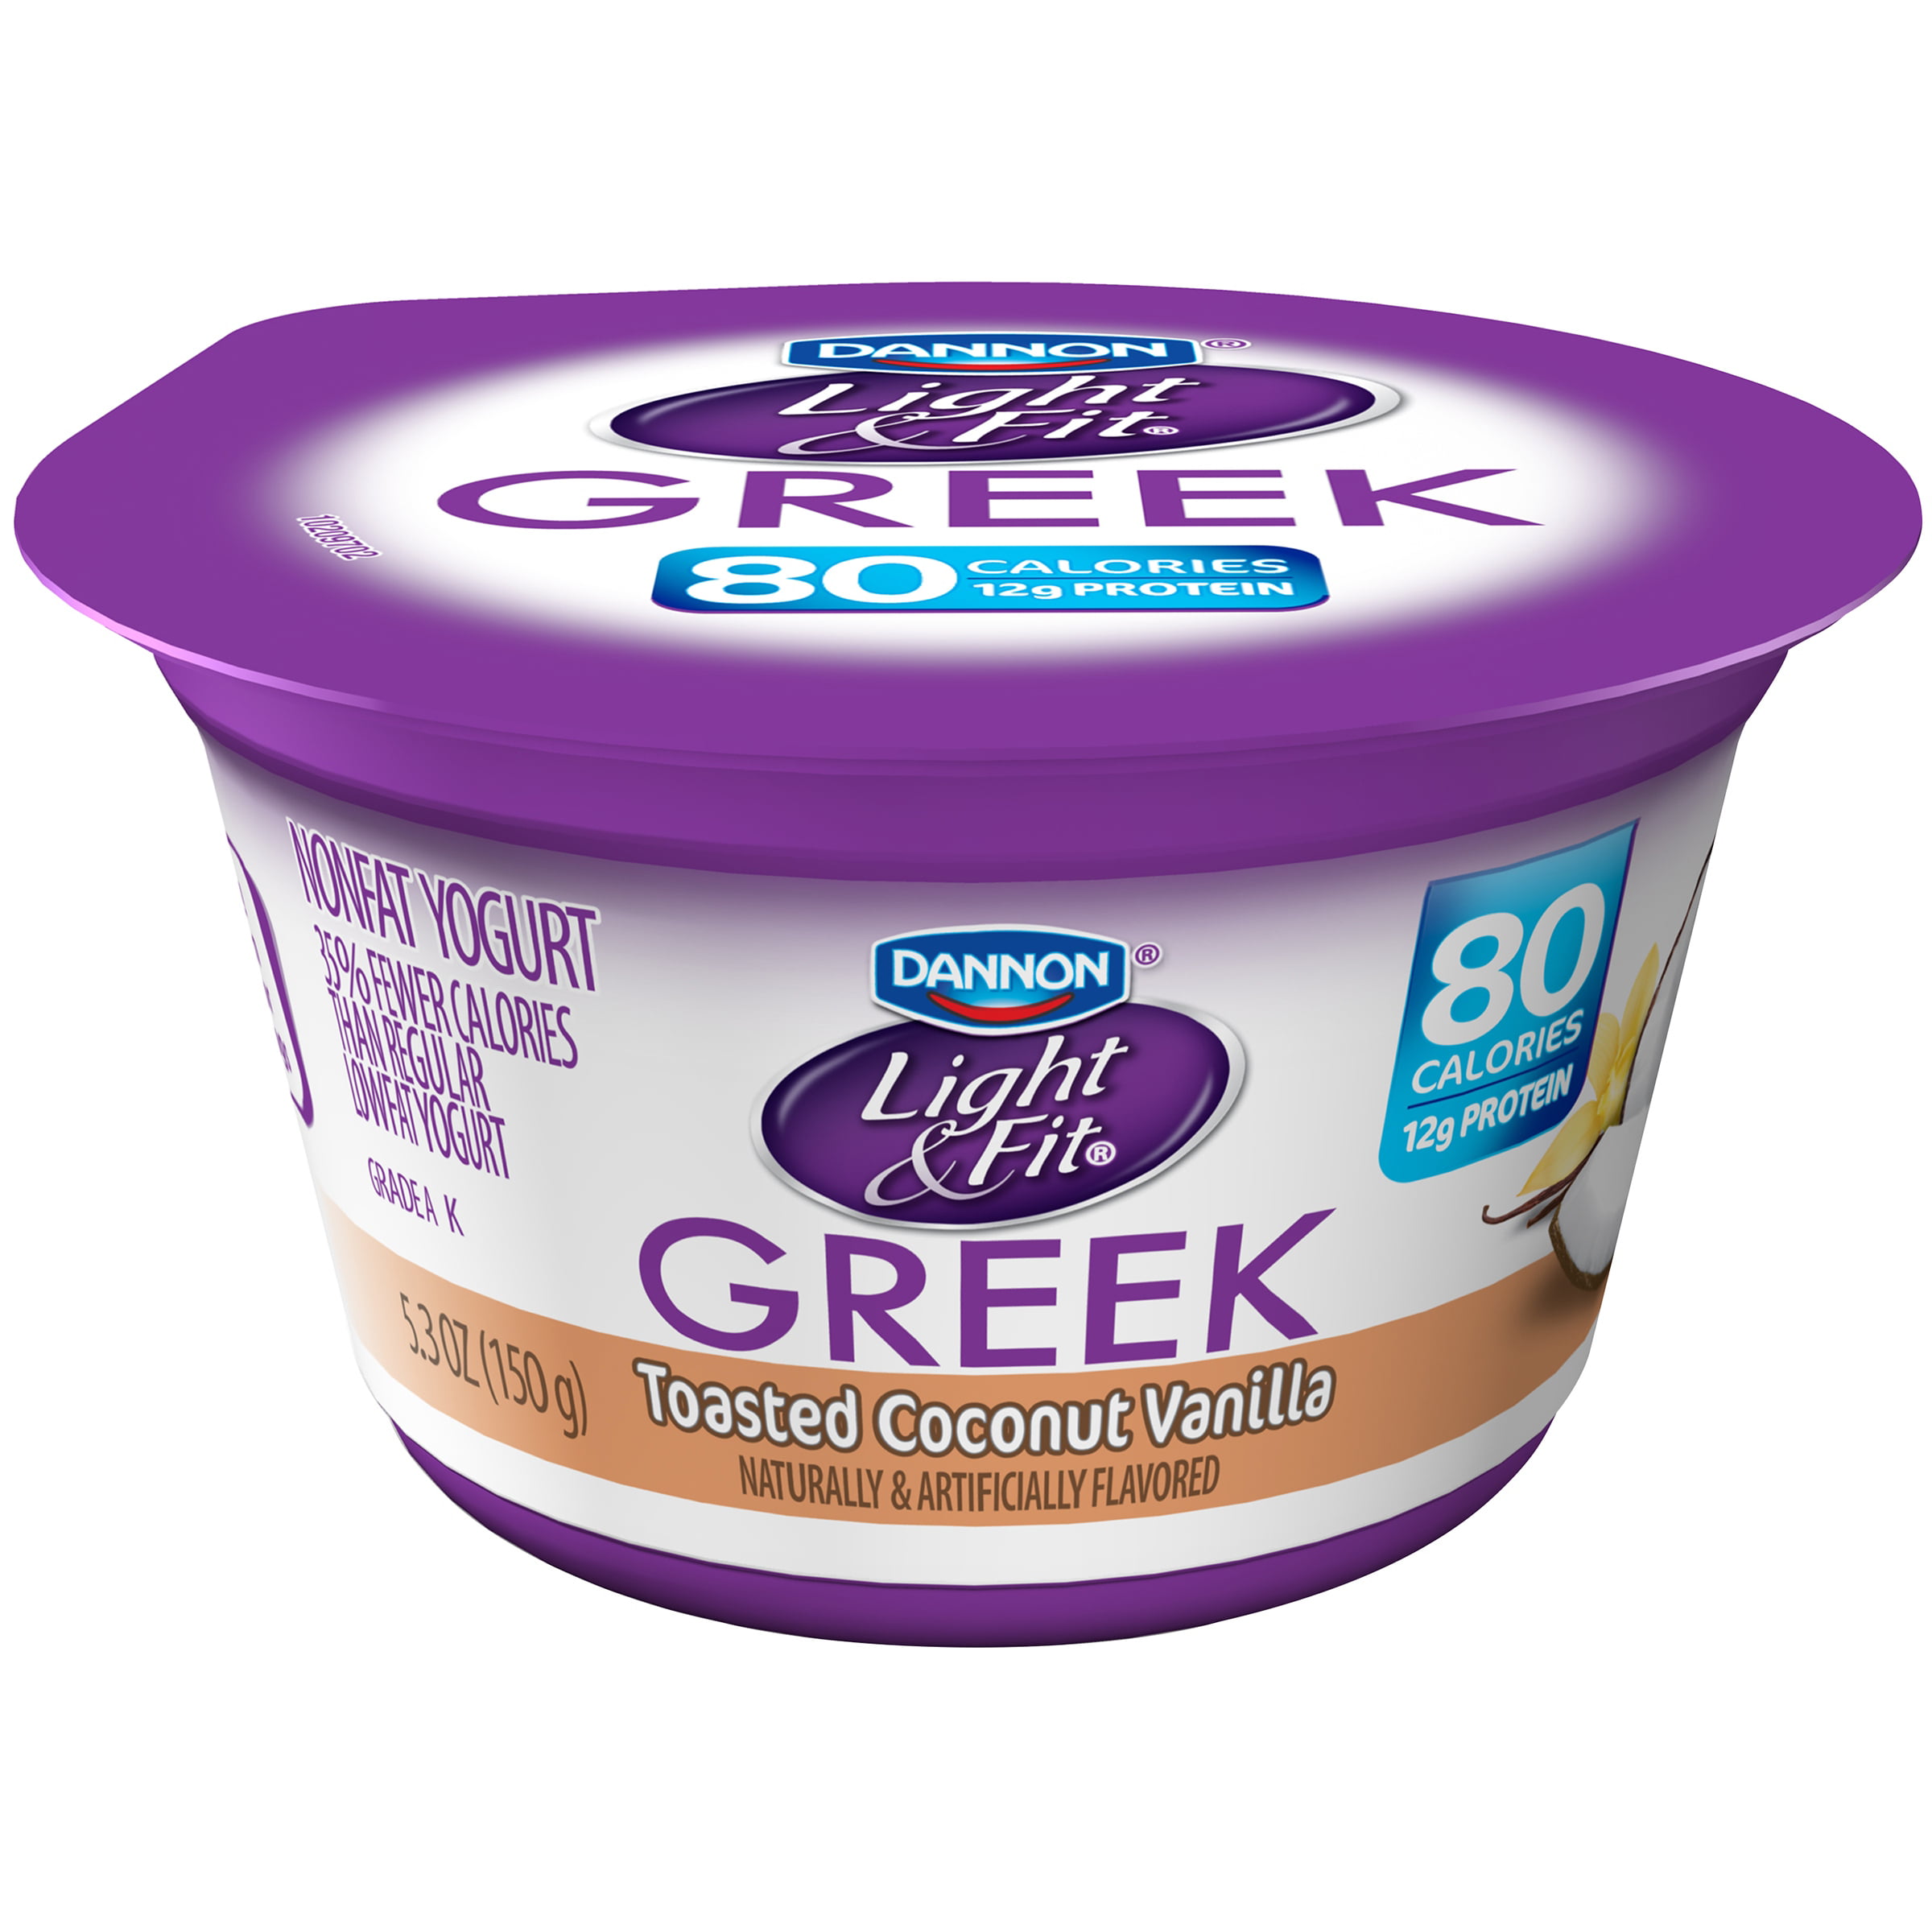 dannon light & fit greek yogurt nutrition information ...